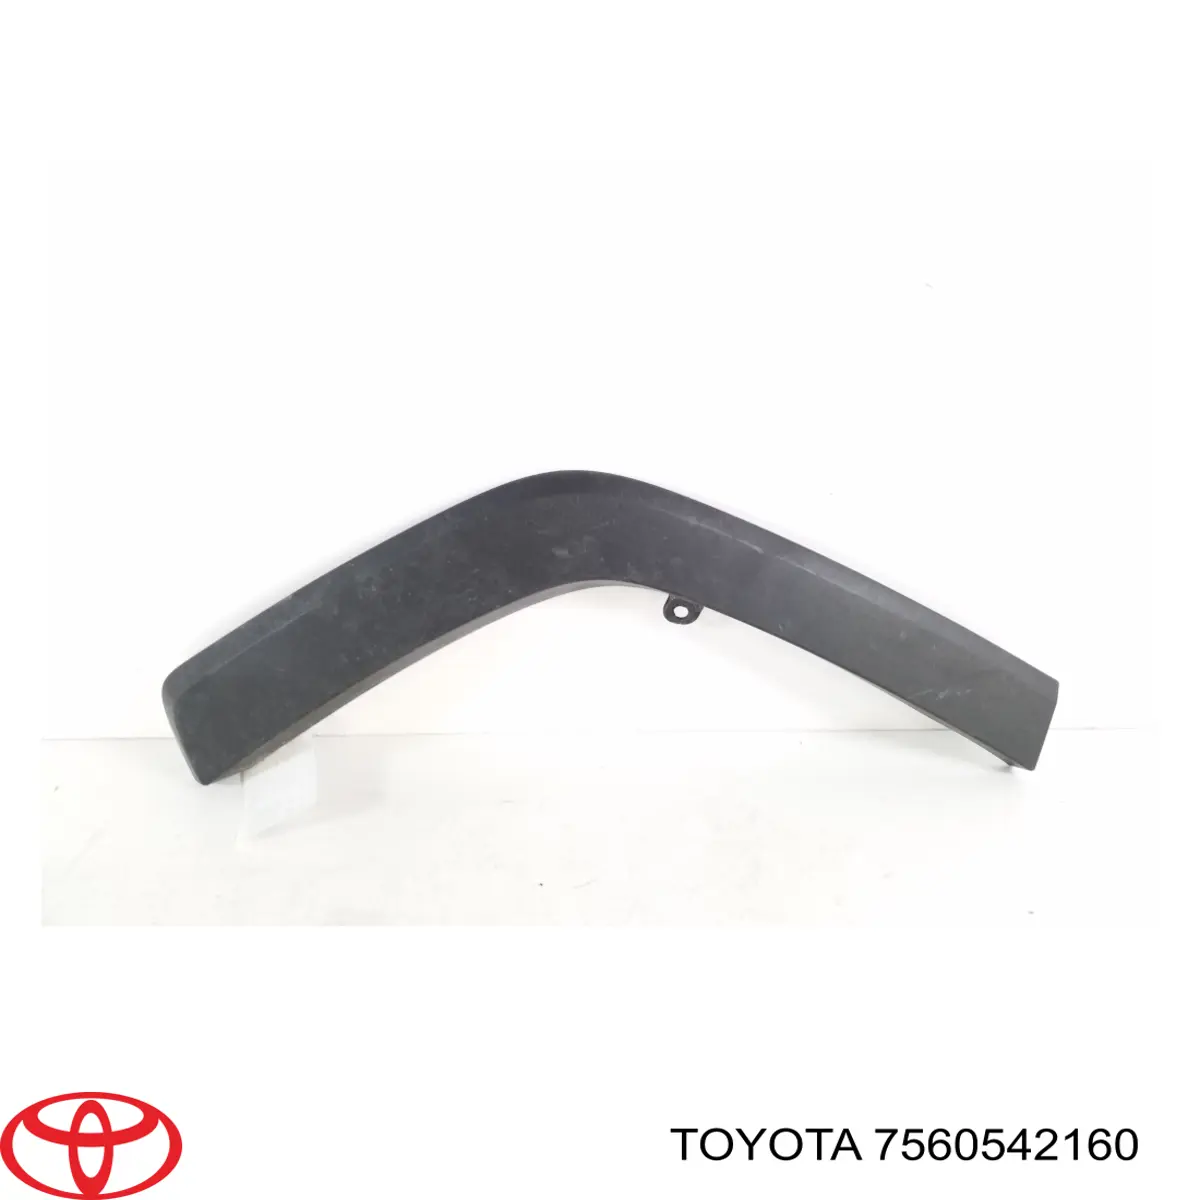 Расширитель (накладка) арки заднего крыла правый Toyota 7560542160